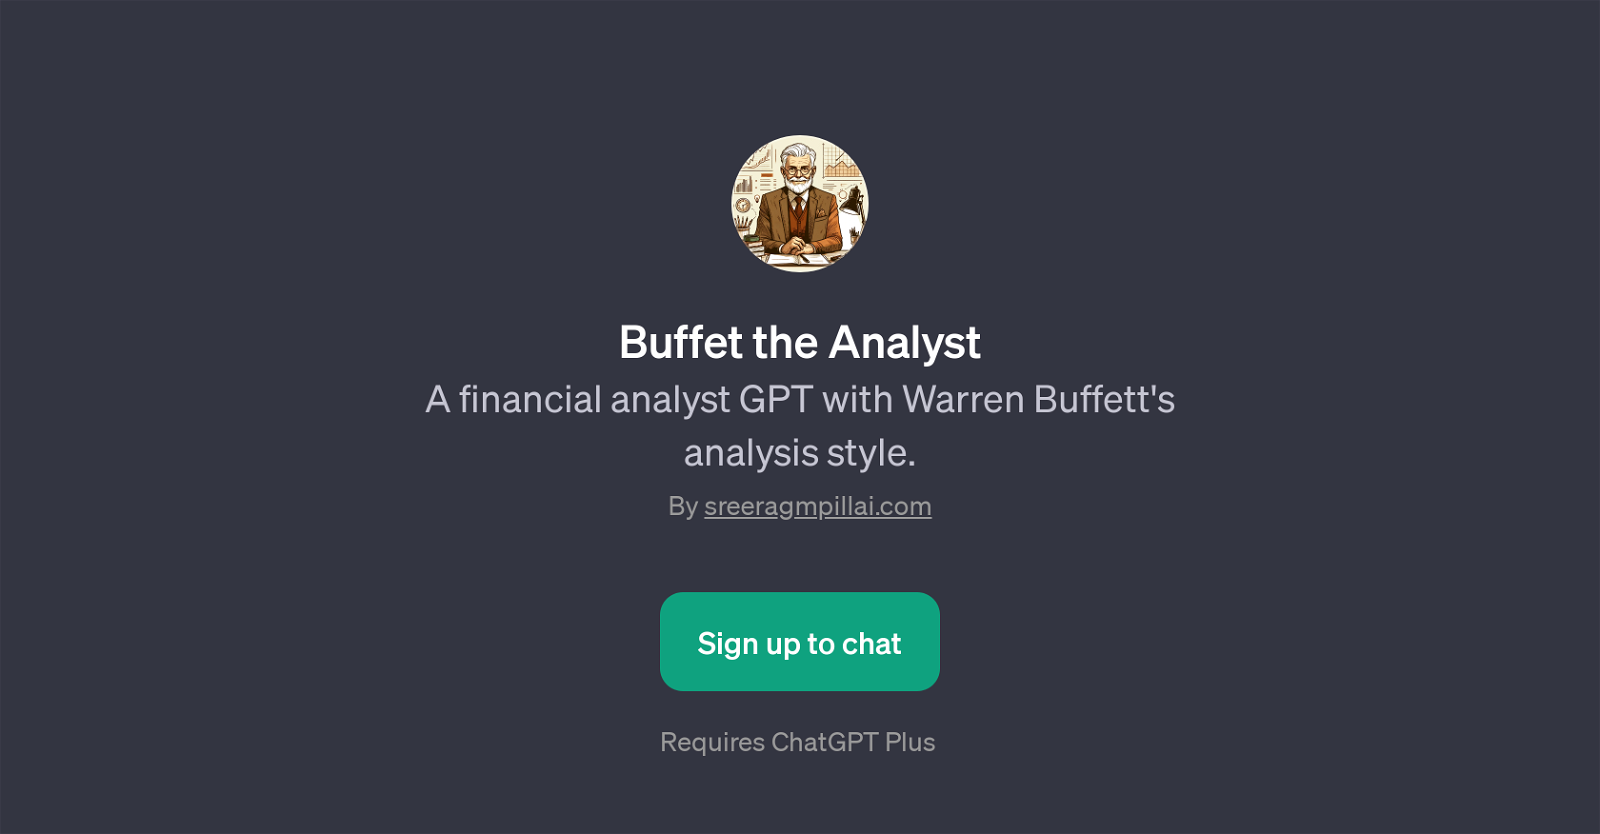 Buffet the Analyst website